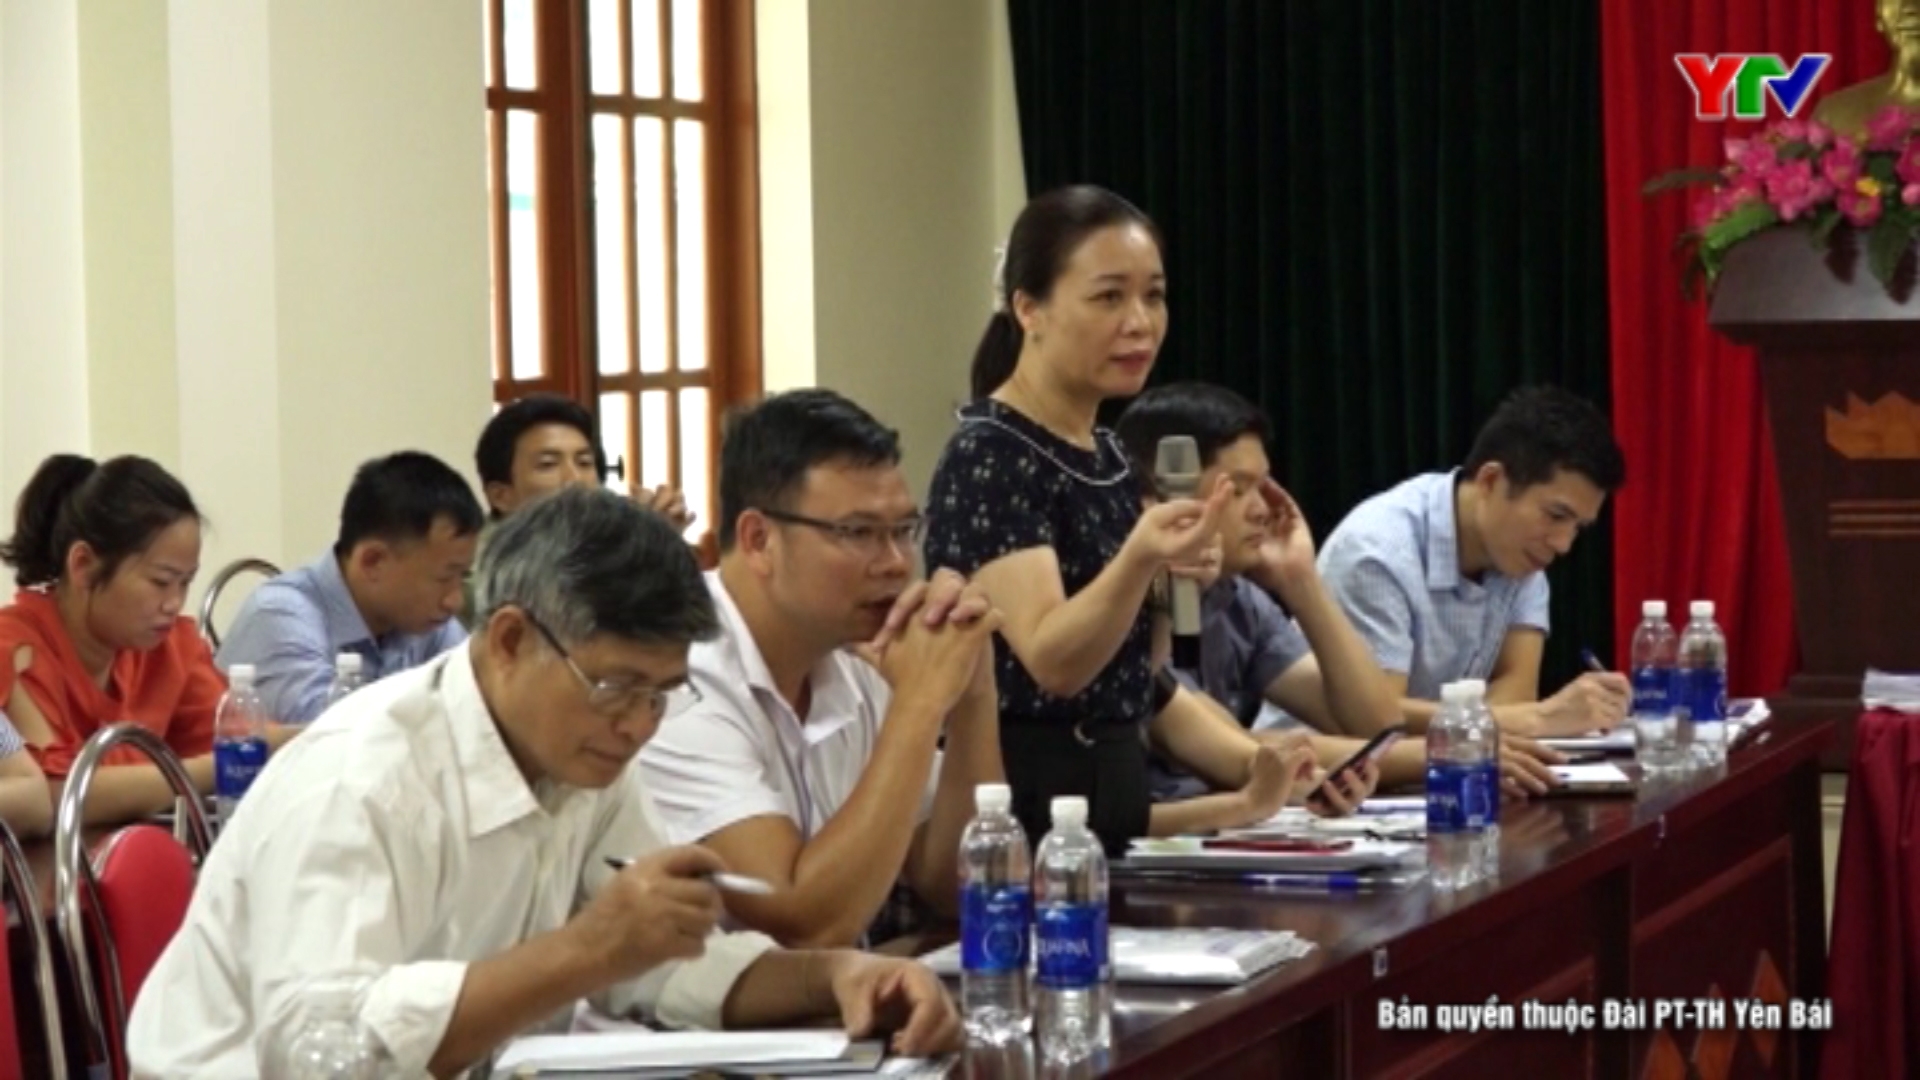 Hội thảo đánh giá, lập kế hoạch khảo sát và thúc đẩy chương trình OCOP trên địa bàn tỉnh Yên Bái.